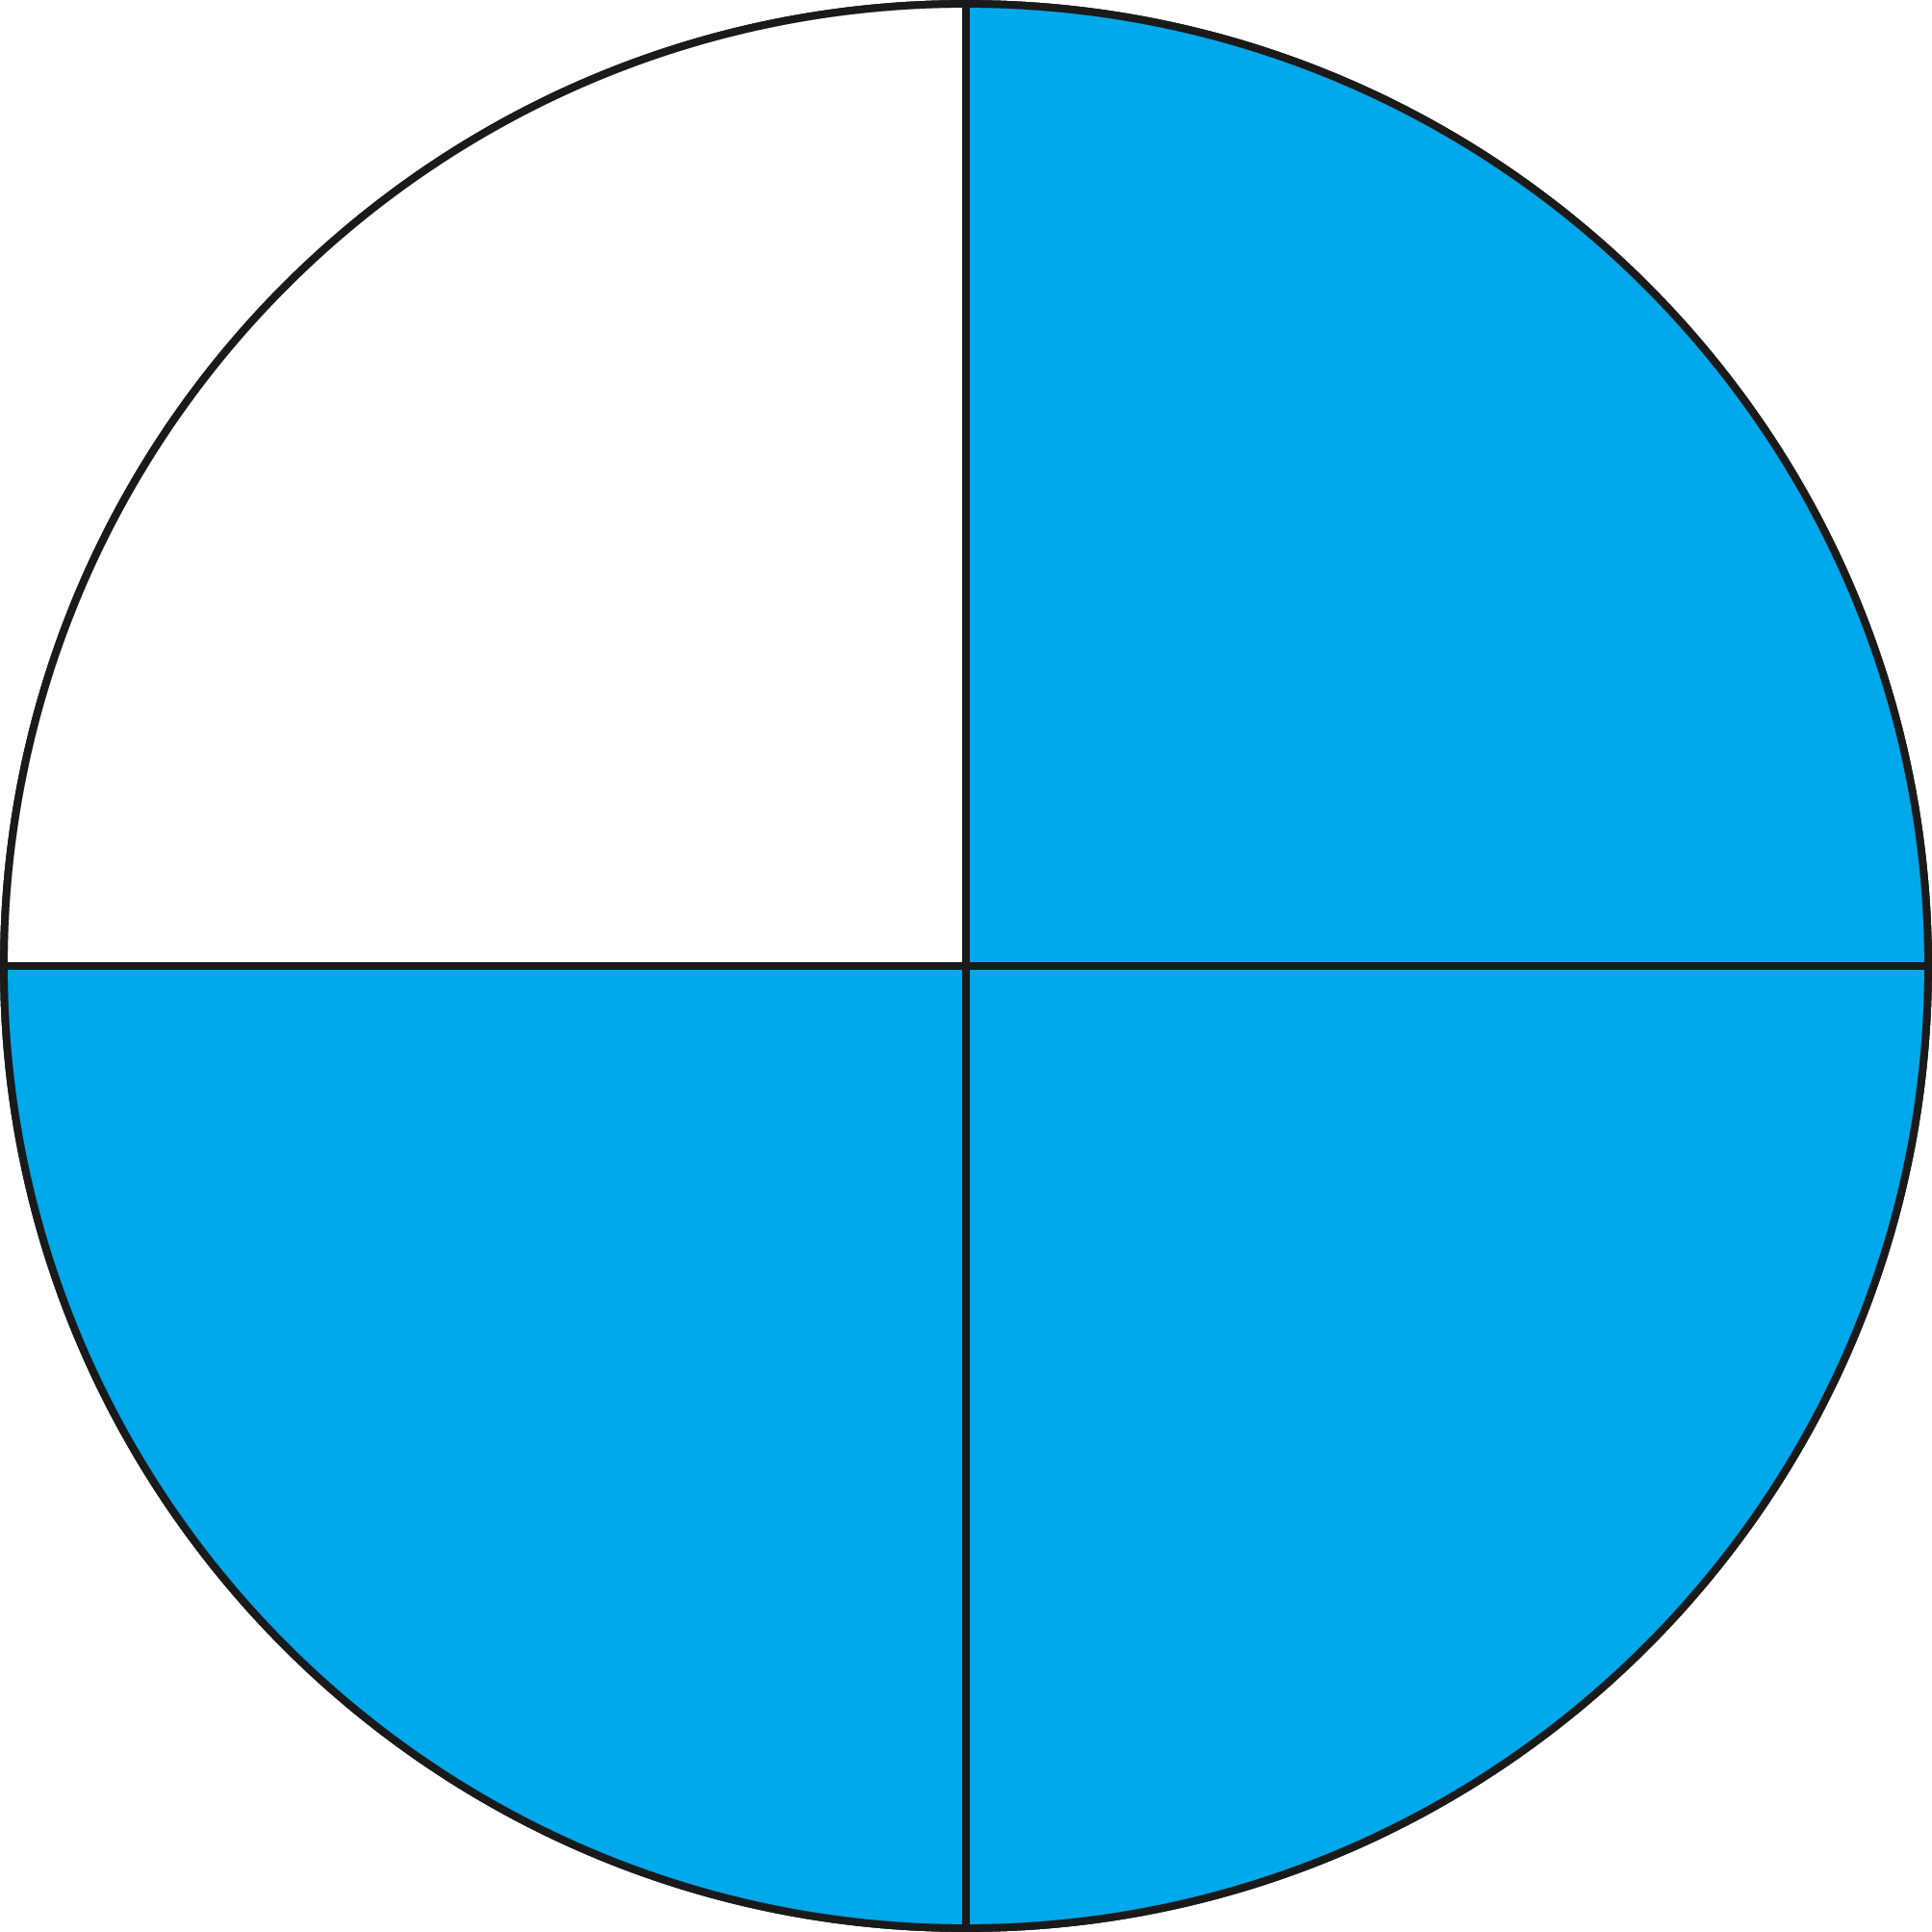 Получить 8 5 из 4 частей. Rhgeu gjltktysq YF 4 xfcnb. Круг поделенный на 4 части. Круг разделенный на части. Круг разделенный на две части.